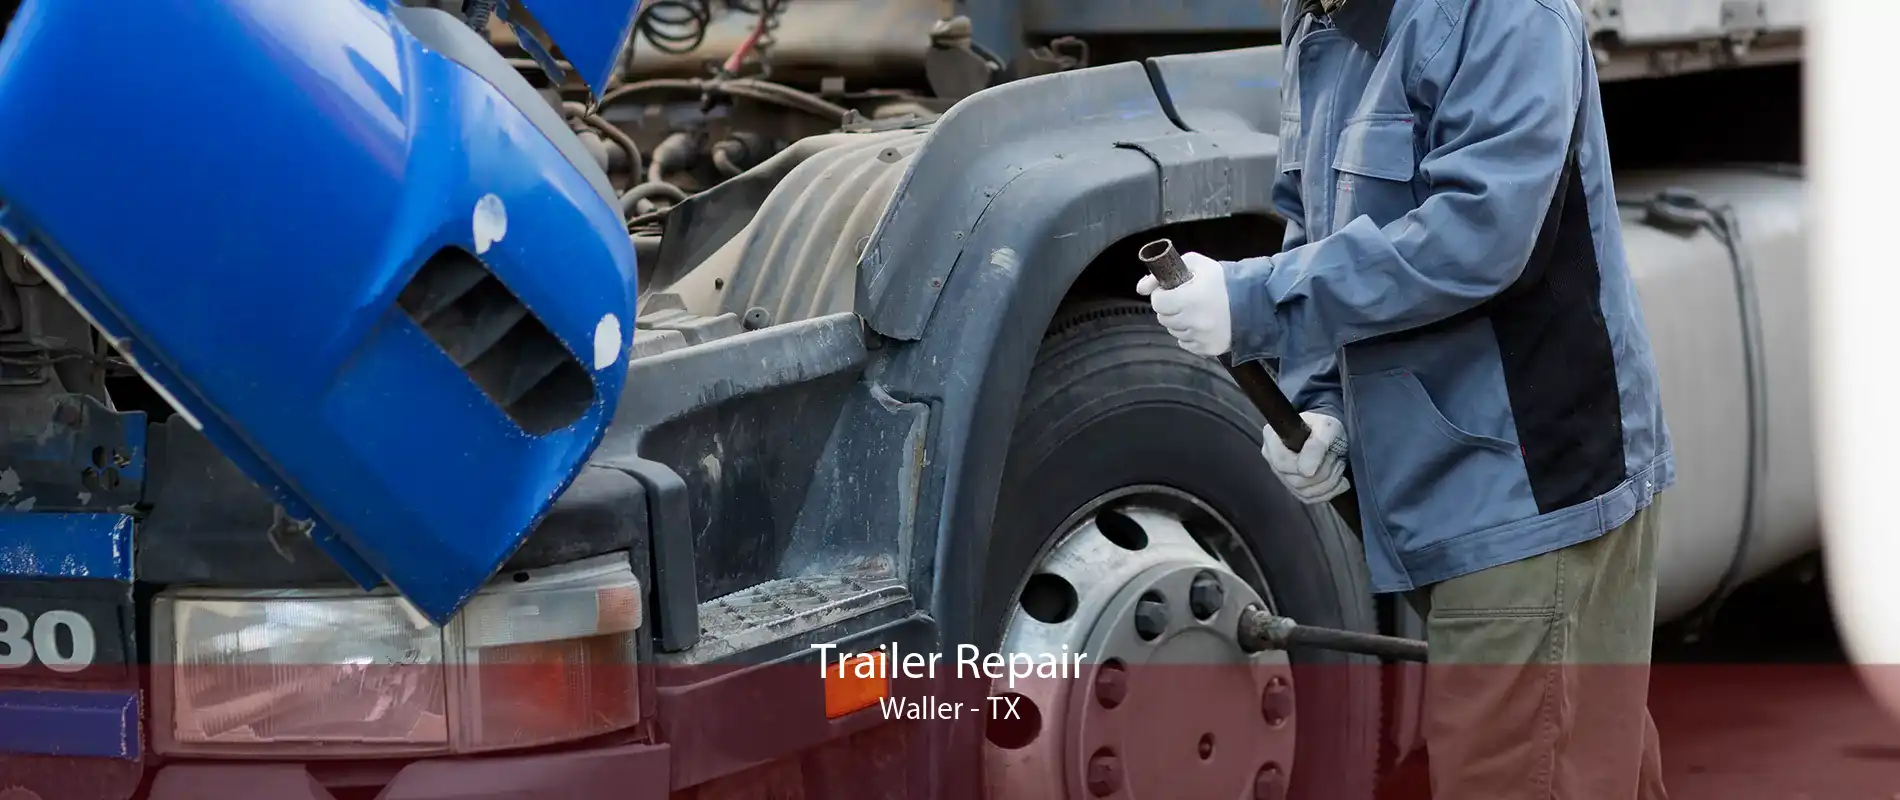 Trailer Repair Waller - TX